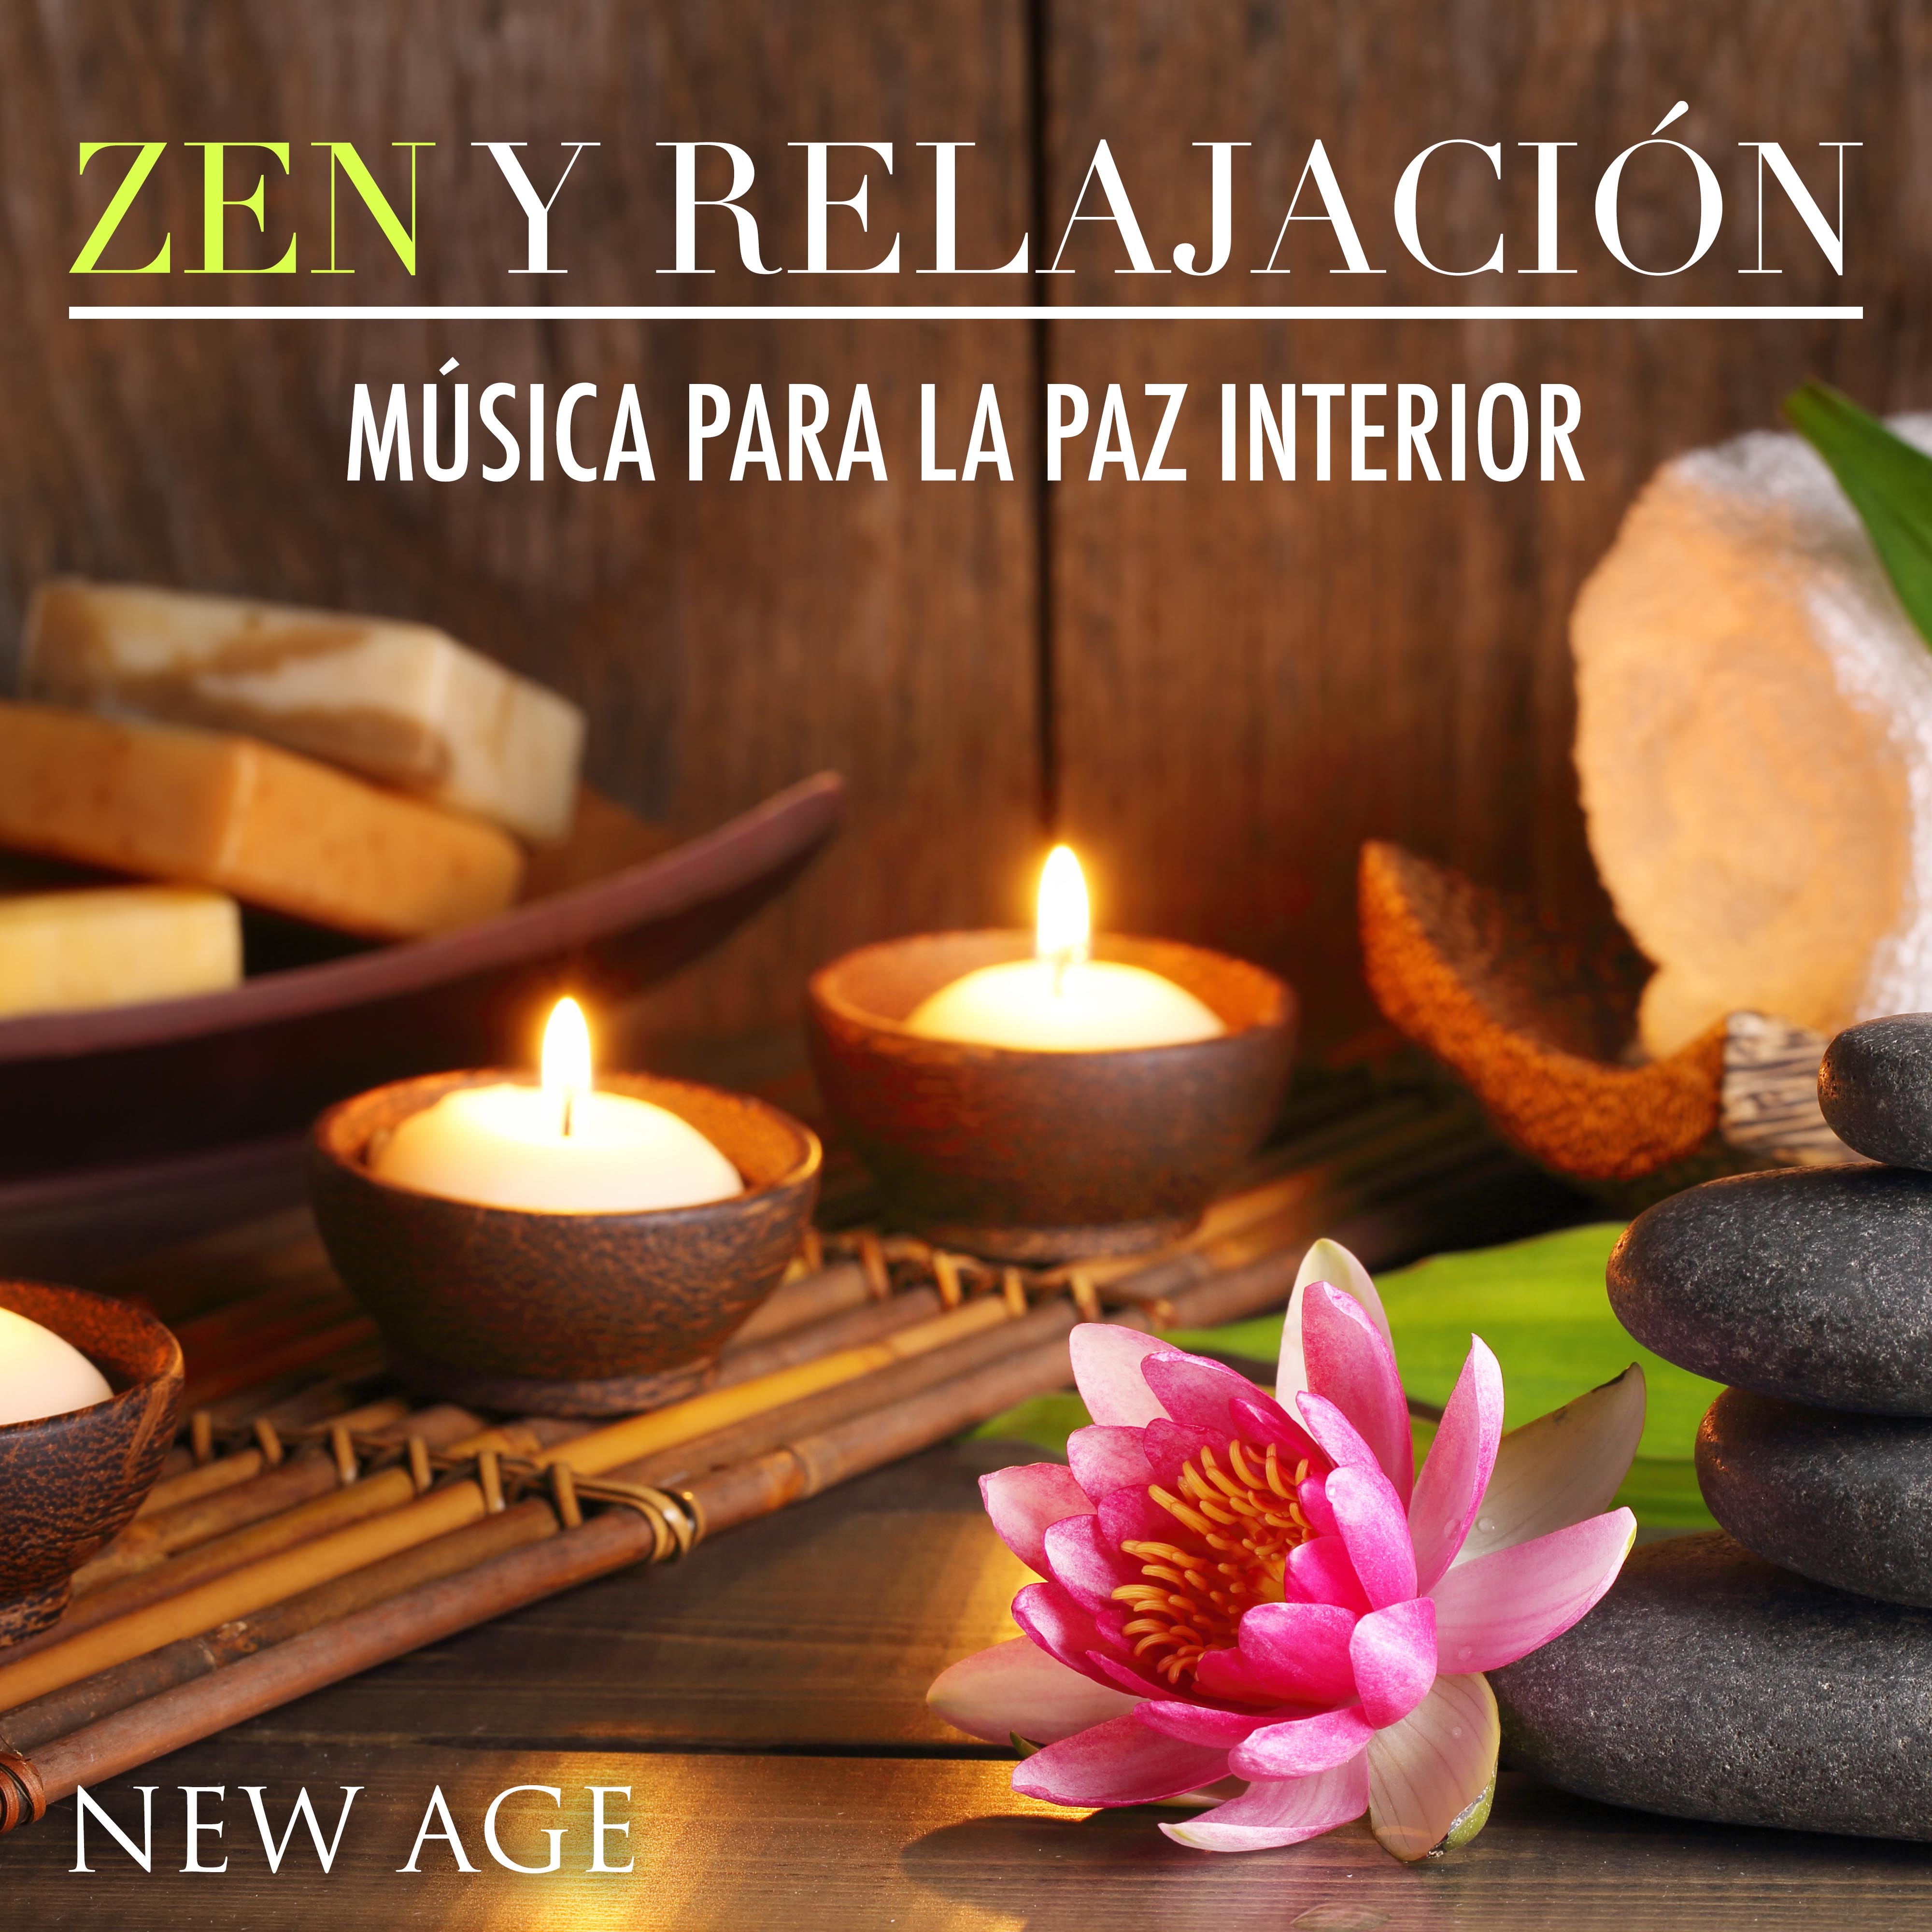 Relajación y Zen - Música New Age para Lograr la Paz Interior